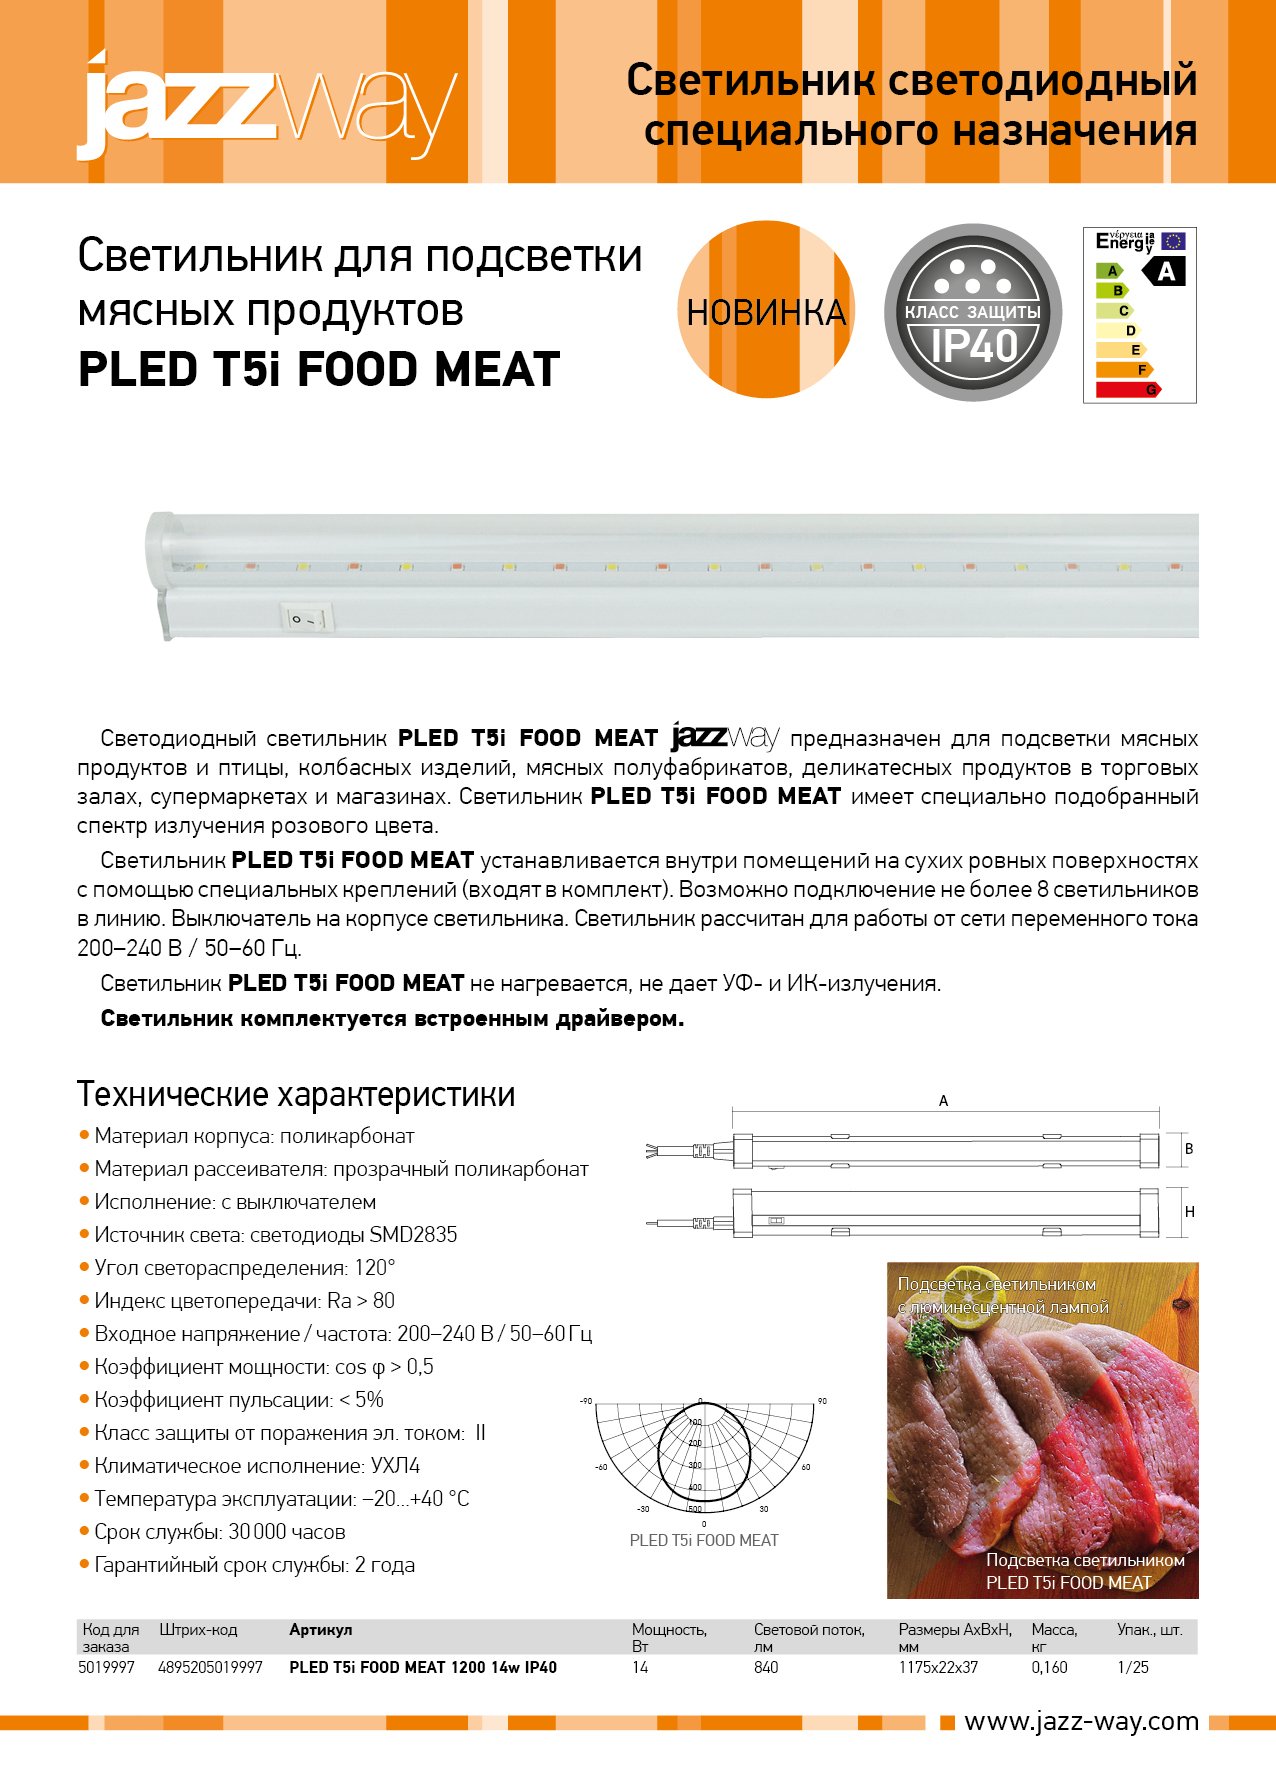 Светильник для подсветки мясных продуктов PLED T5i FOOD MEAT